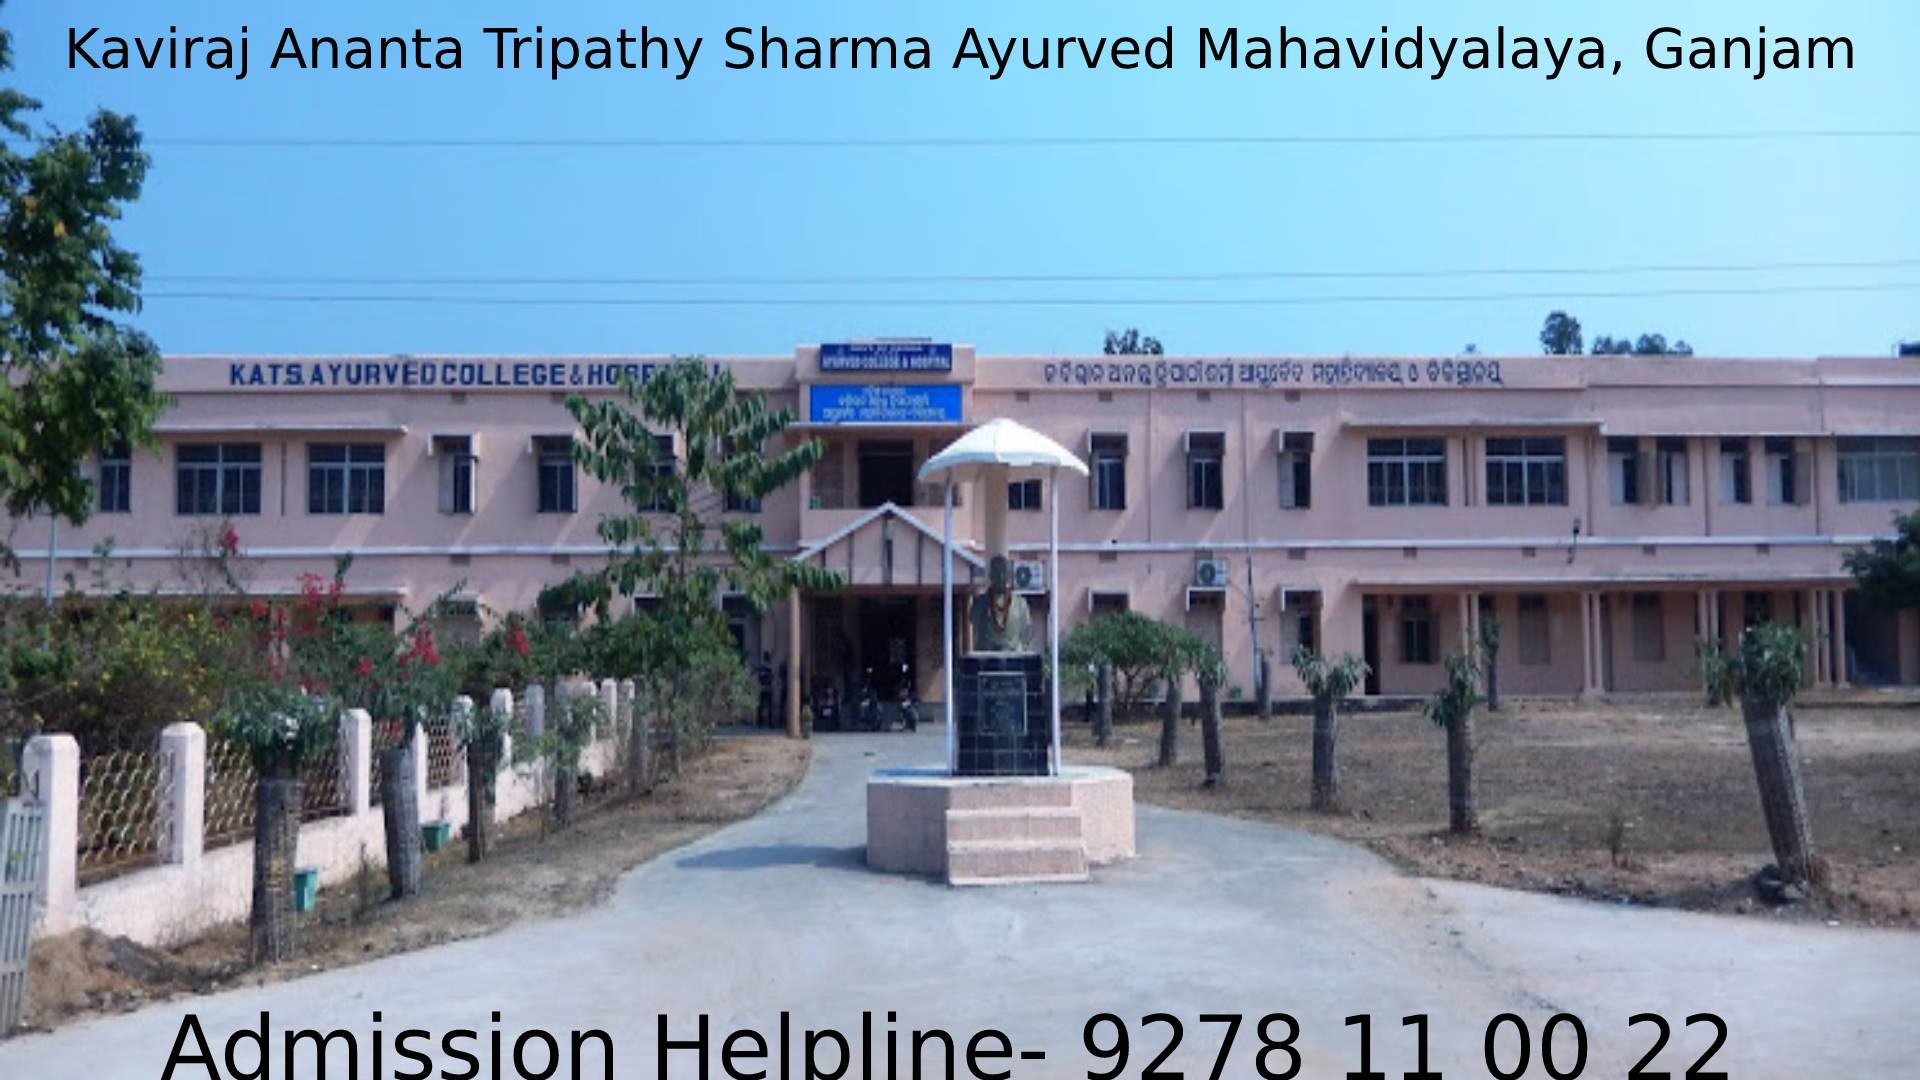 Kaviraj Ananta Tripathy Sharma Ayurved Mahavidyalaya, Ganjam